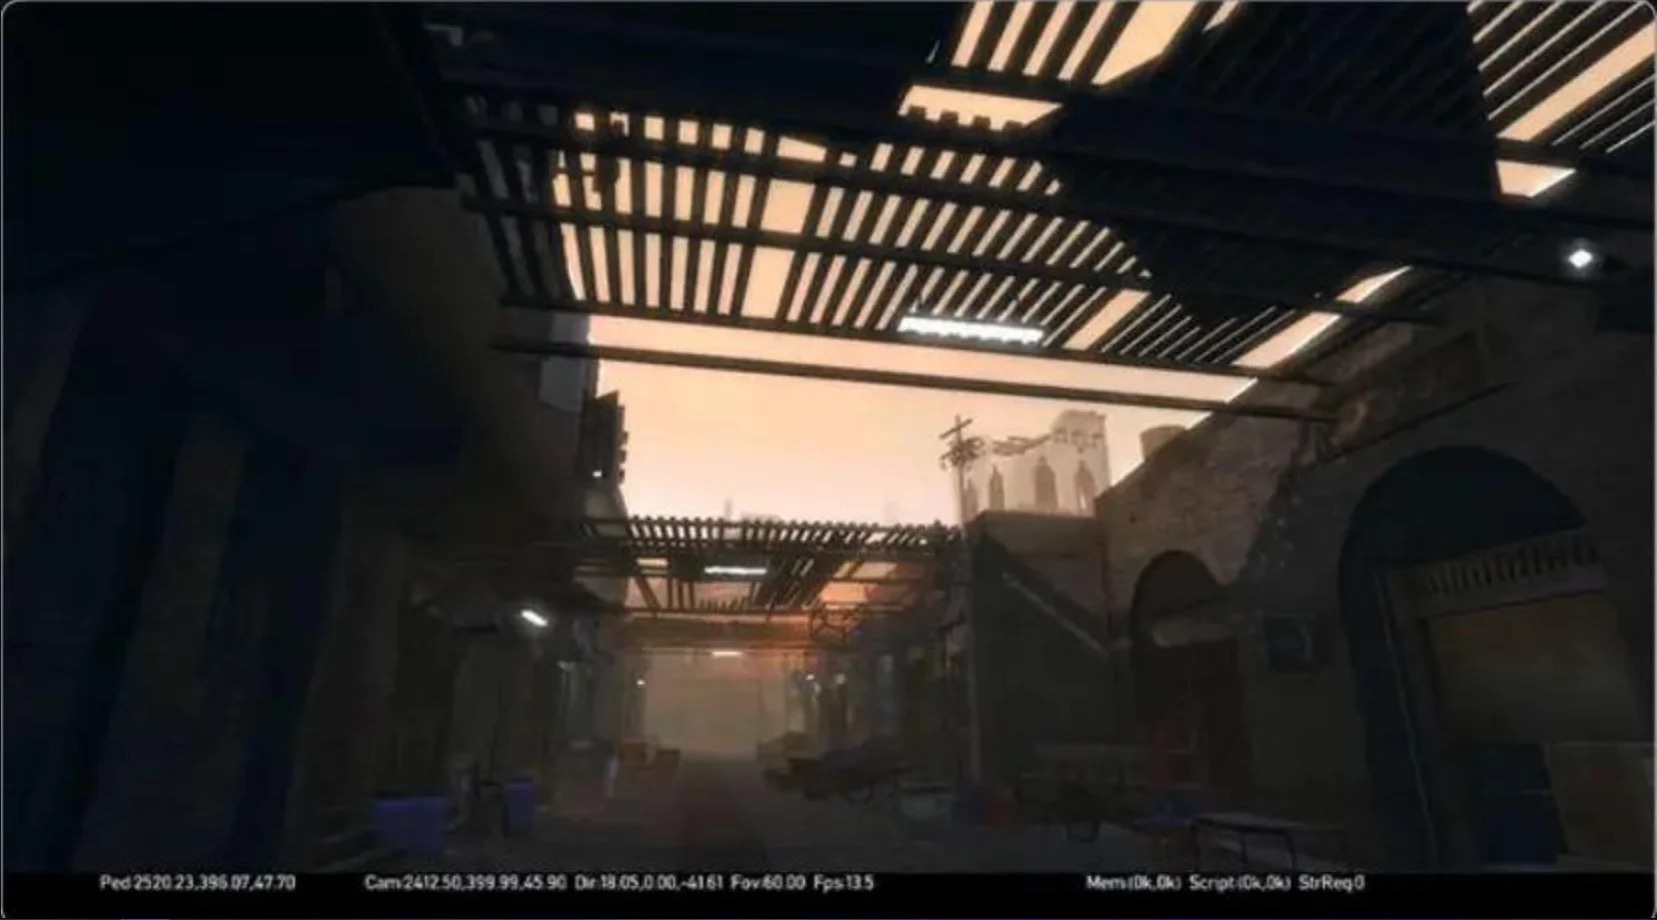 Утечка: изображения отмененного DLC для GTA V и отмененной игры Agent: с сайта NEWXBOXONE.RU